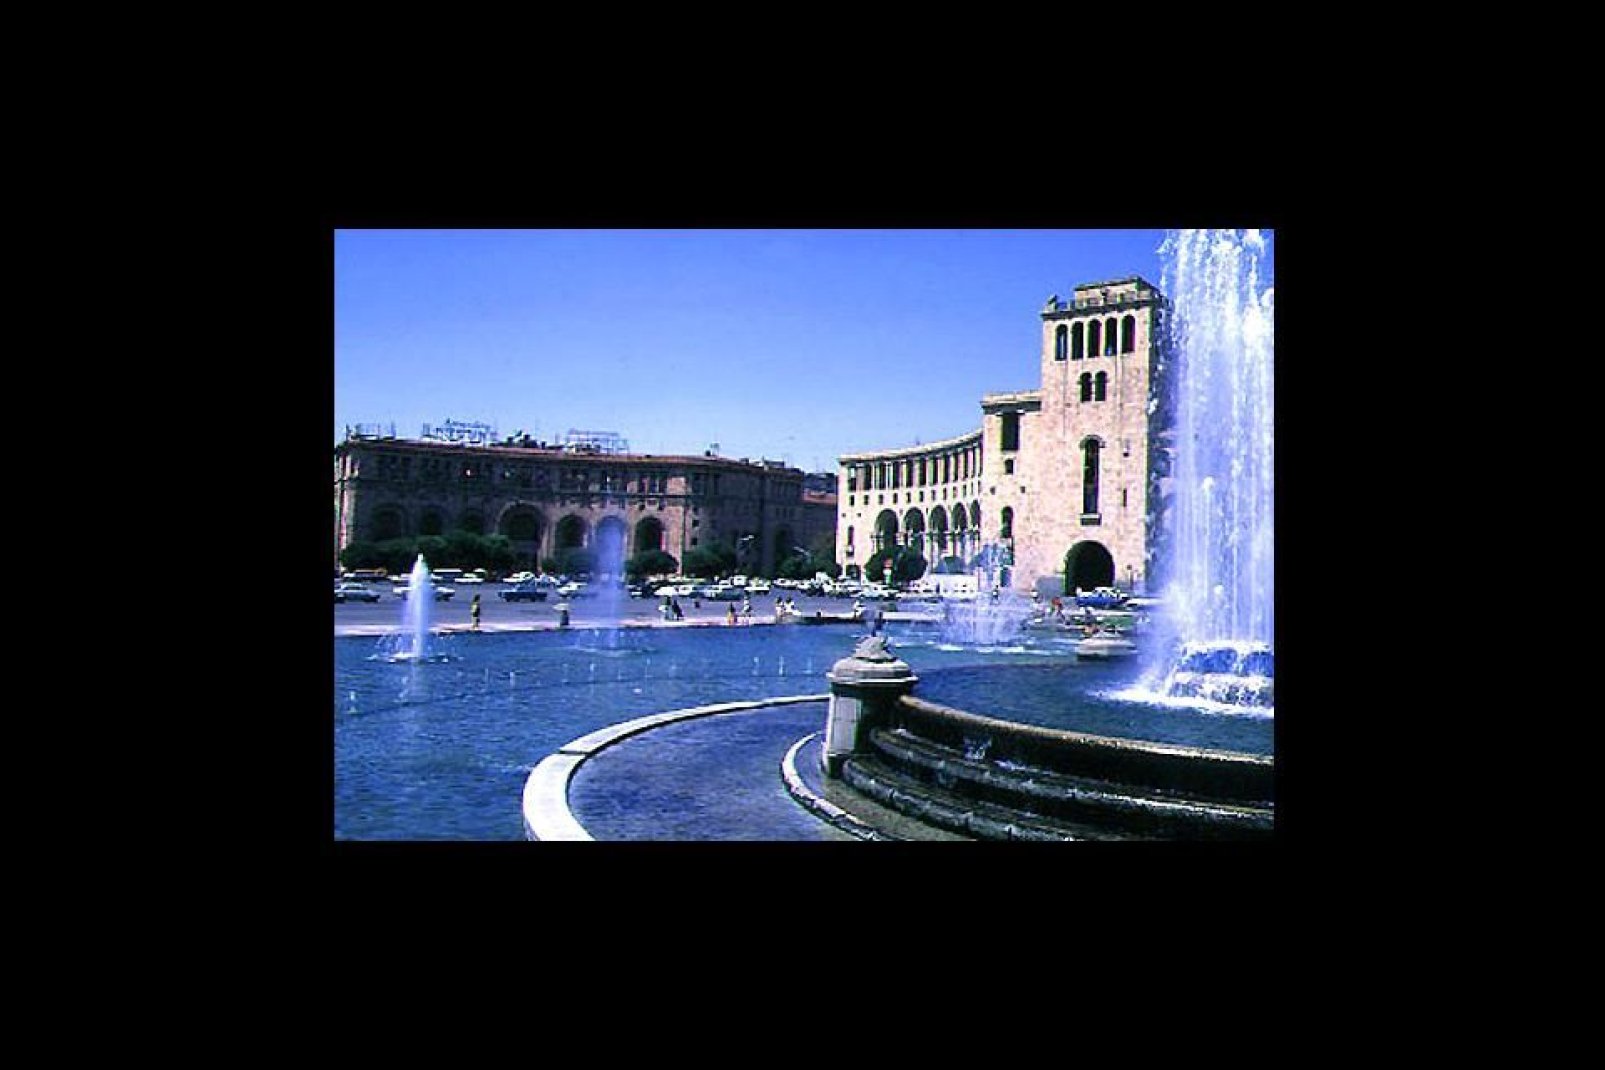 La place, décorée de fontaines et entourée de bâtiments de style soviétique avec des influences arméniennes, est le cœur de la capitale.